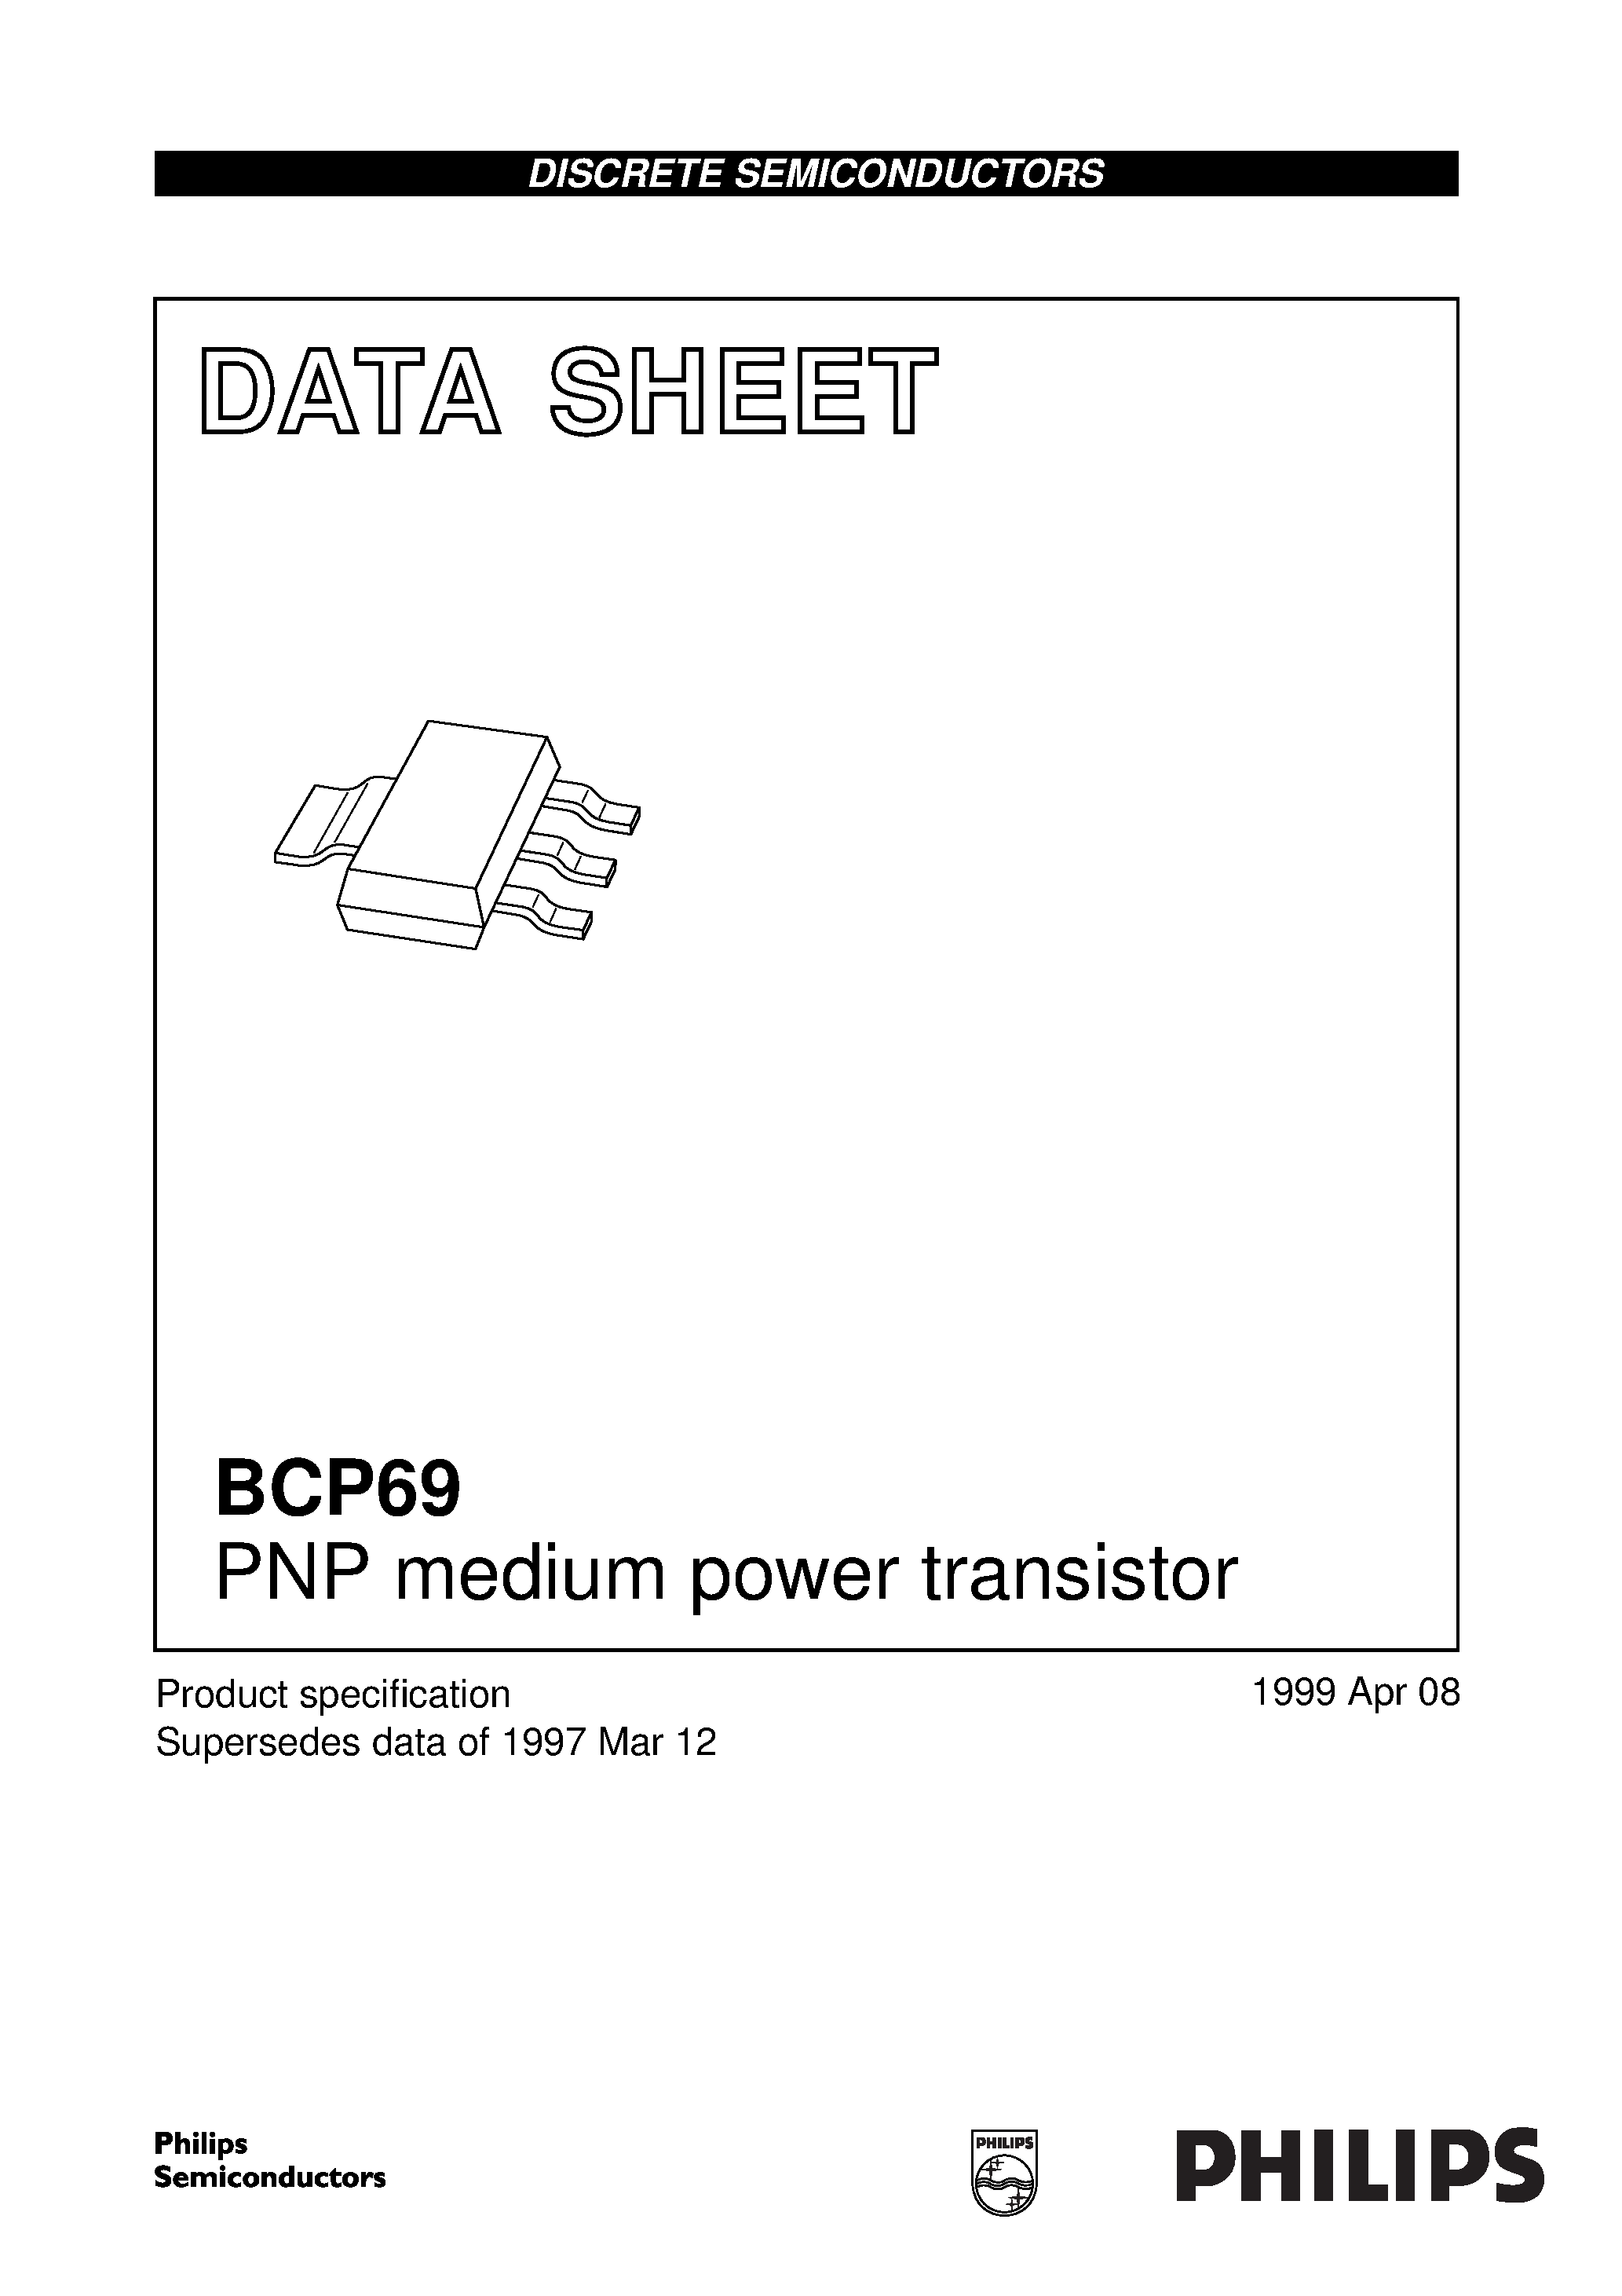 Даташит BCP69-25 - PNP medium power transistor страница 1